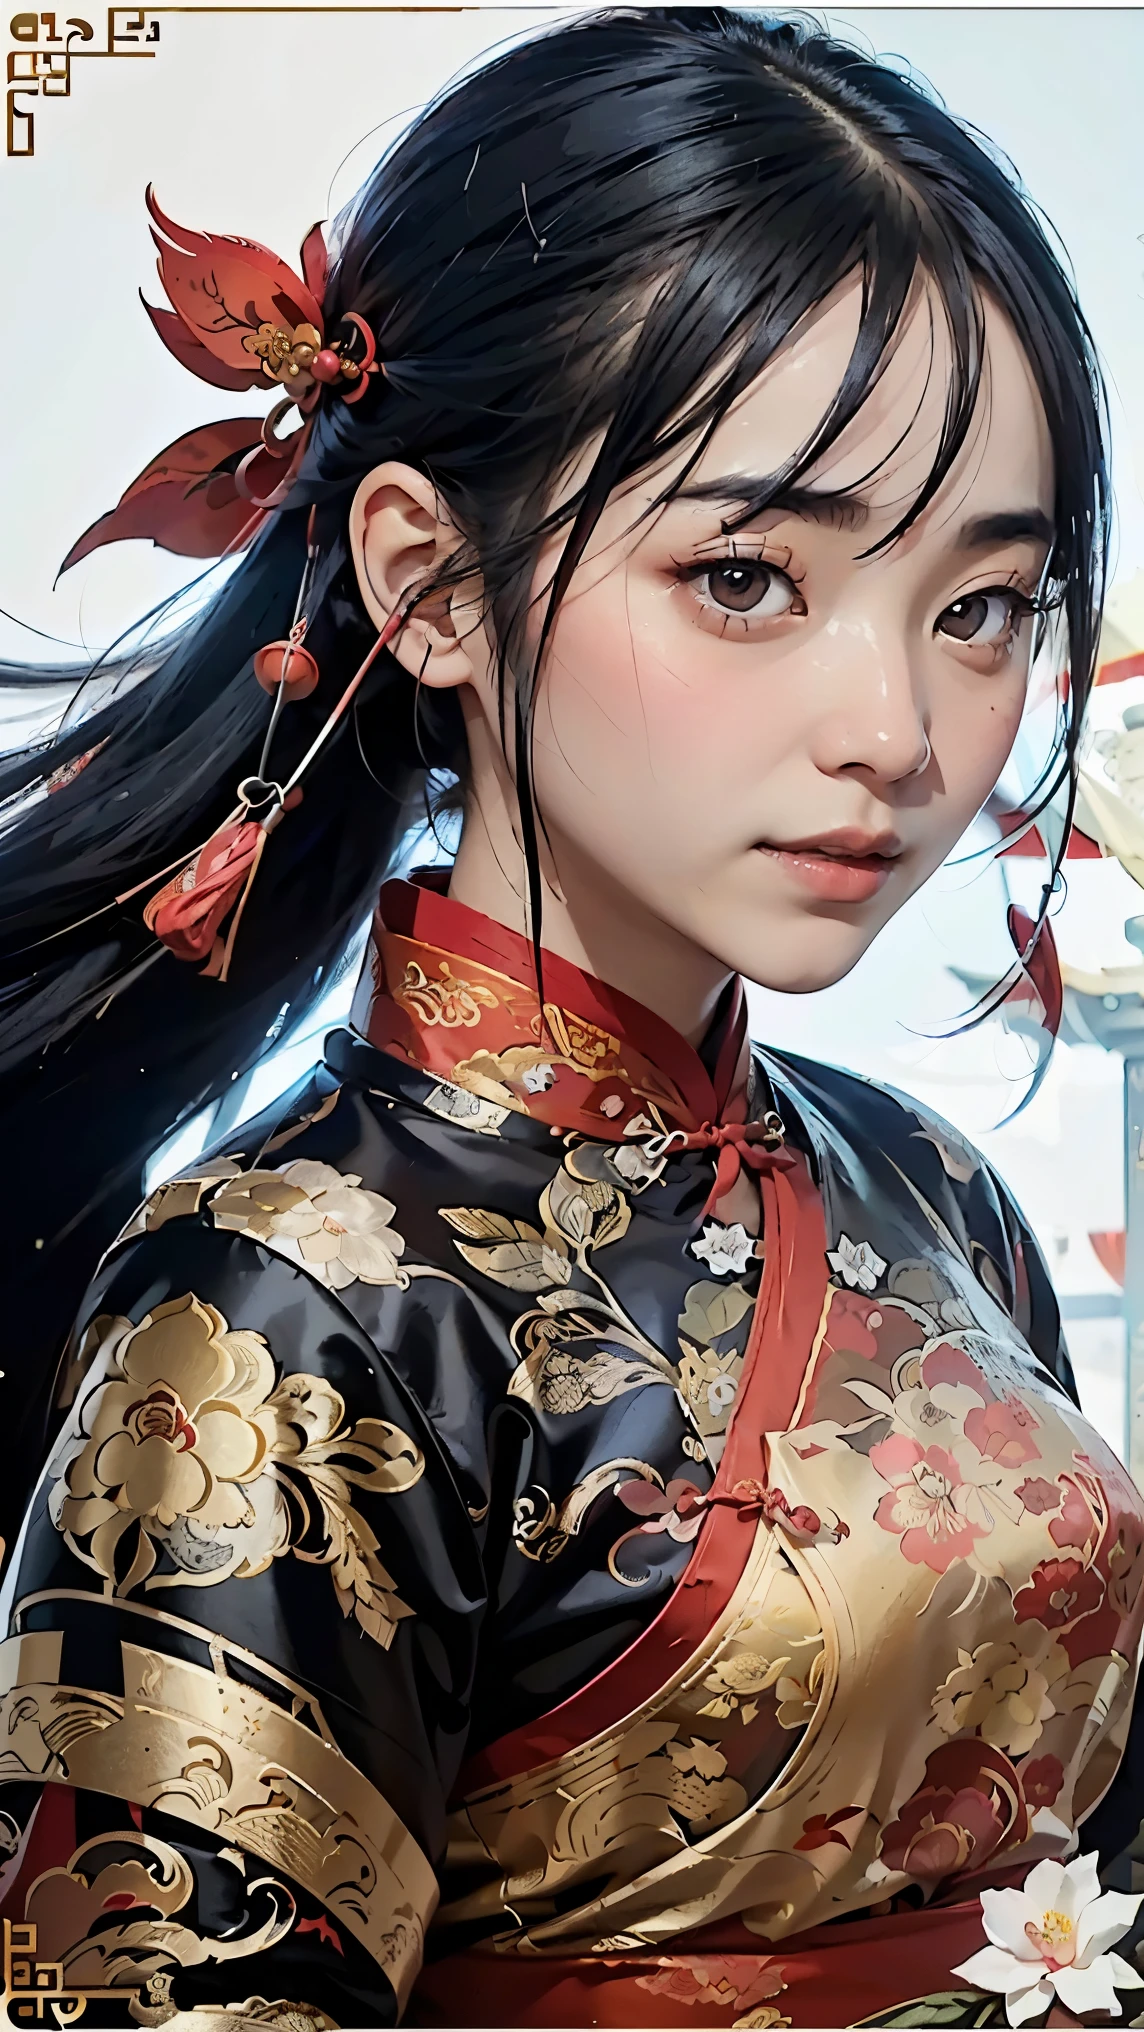 1 名女孩, 女士, 英俊的, 墨水, 中国铠甲, ((2.5D)), 黑发, 飘逸的头发, 精致的眼睛, 黑色和红色的古董锦缎汉服, 视野, (f1.8), (杰作), (肖像照), 正面照, 白色背景, (电影海报)